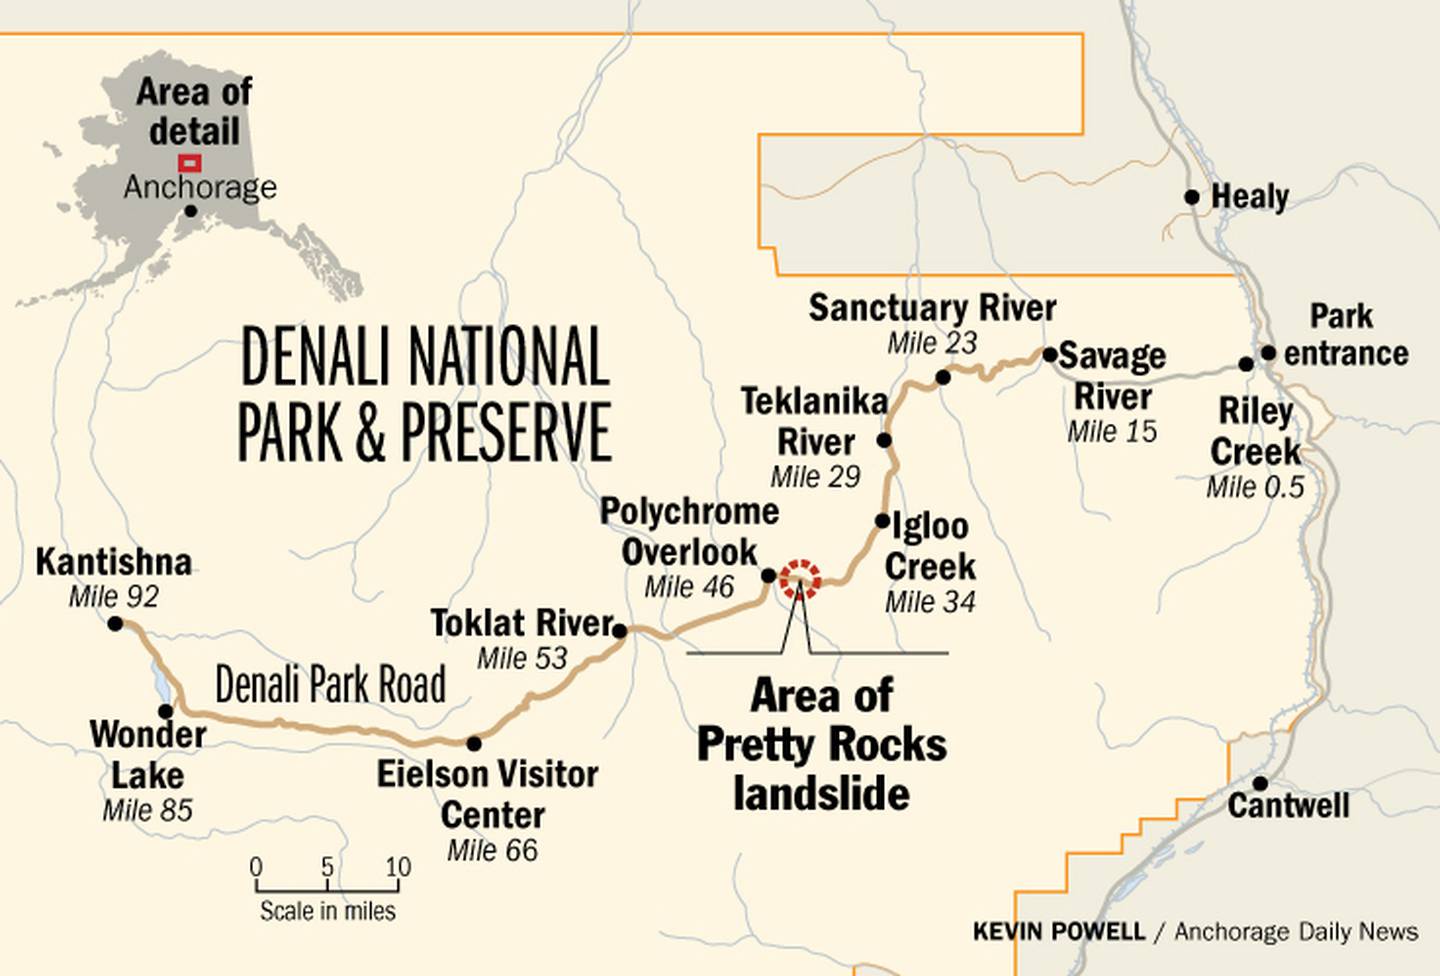 Denali Park Road, Pretty Rocks landslide, map, graphic, national park, mile markers